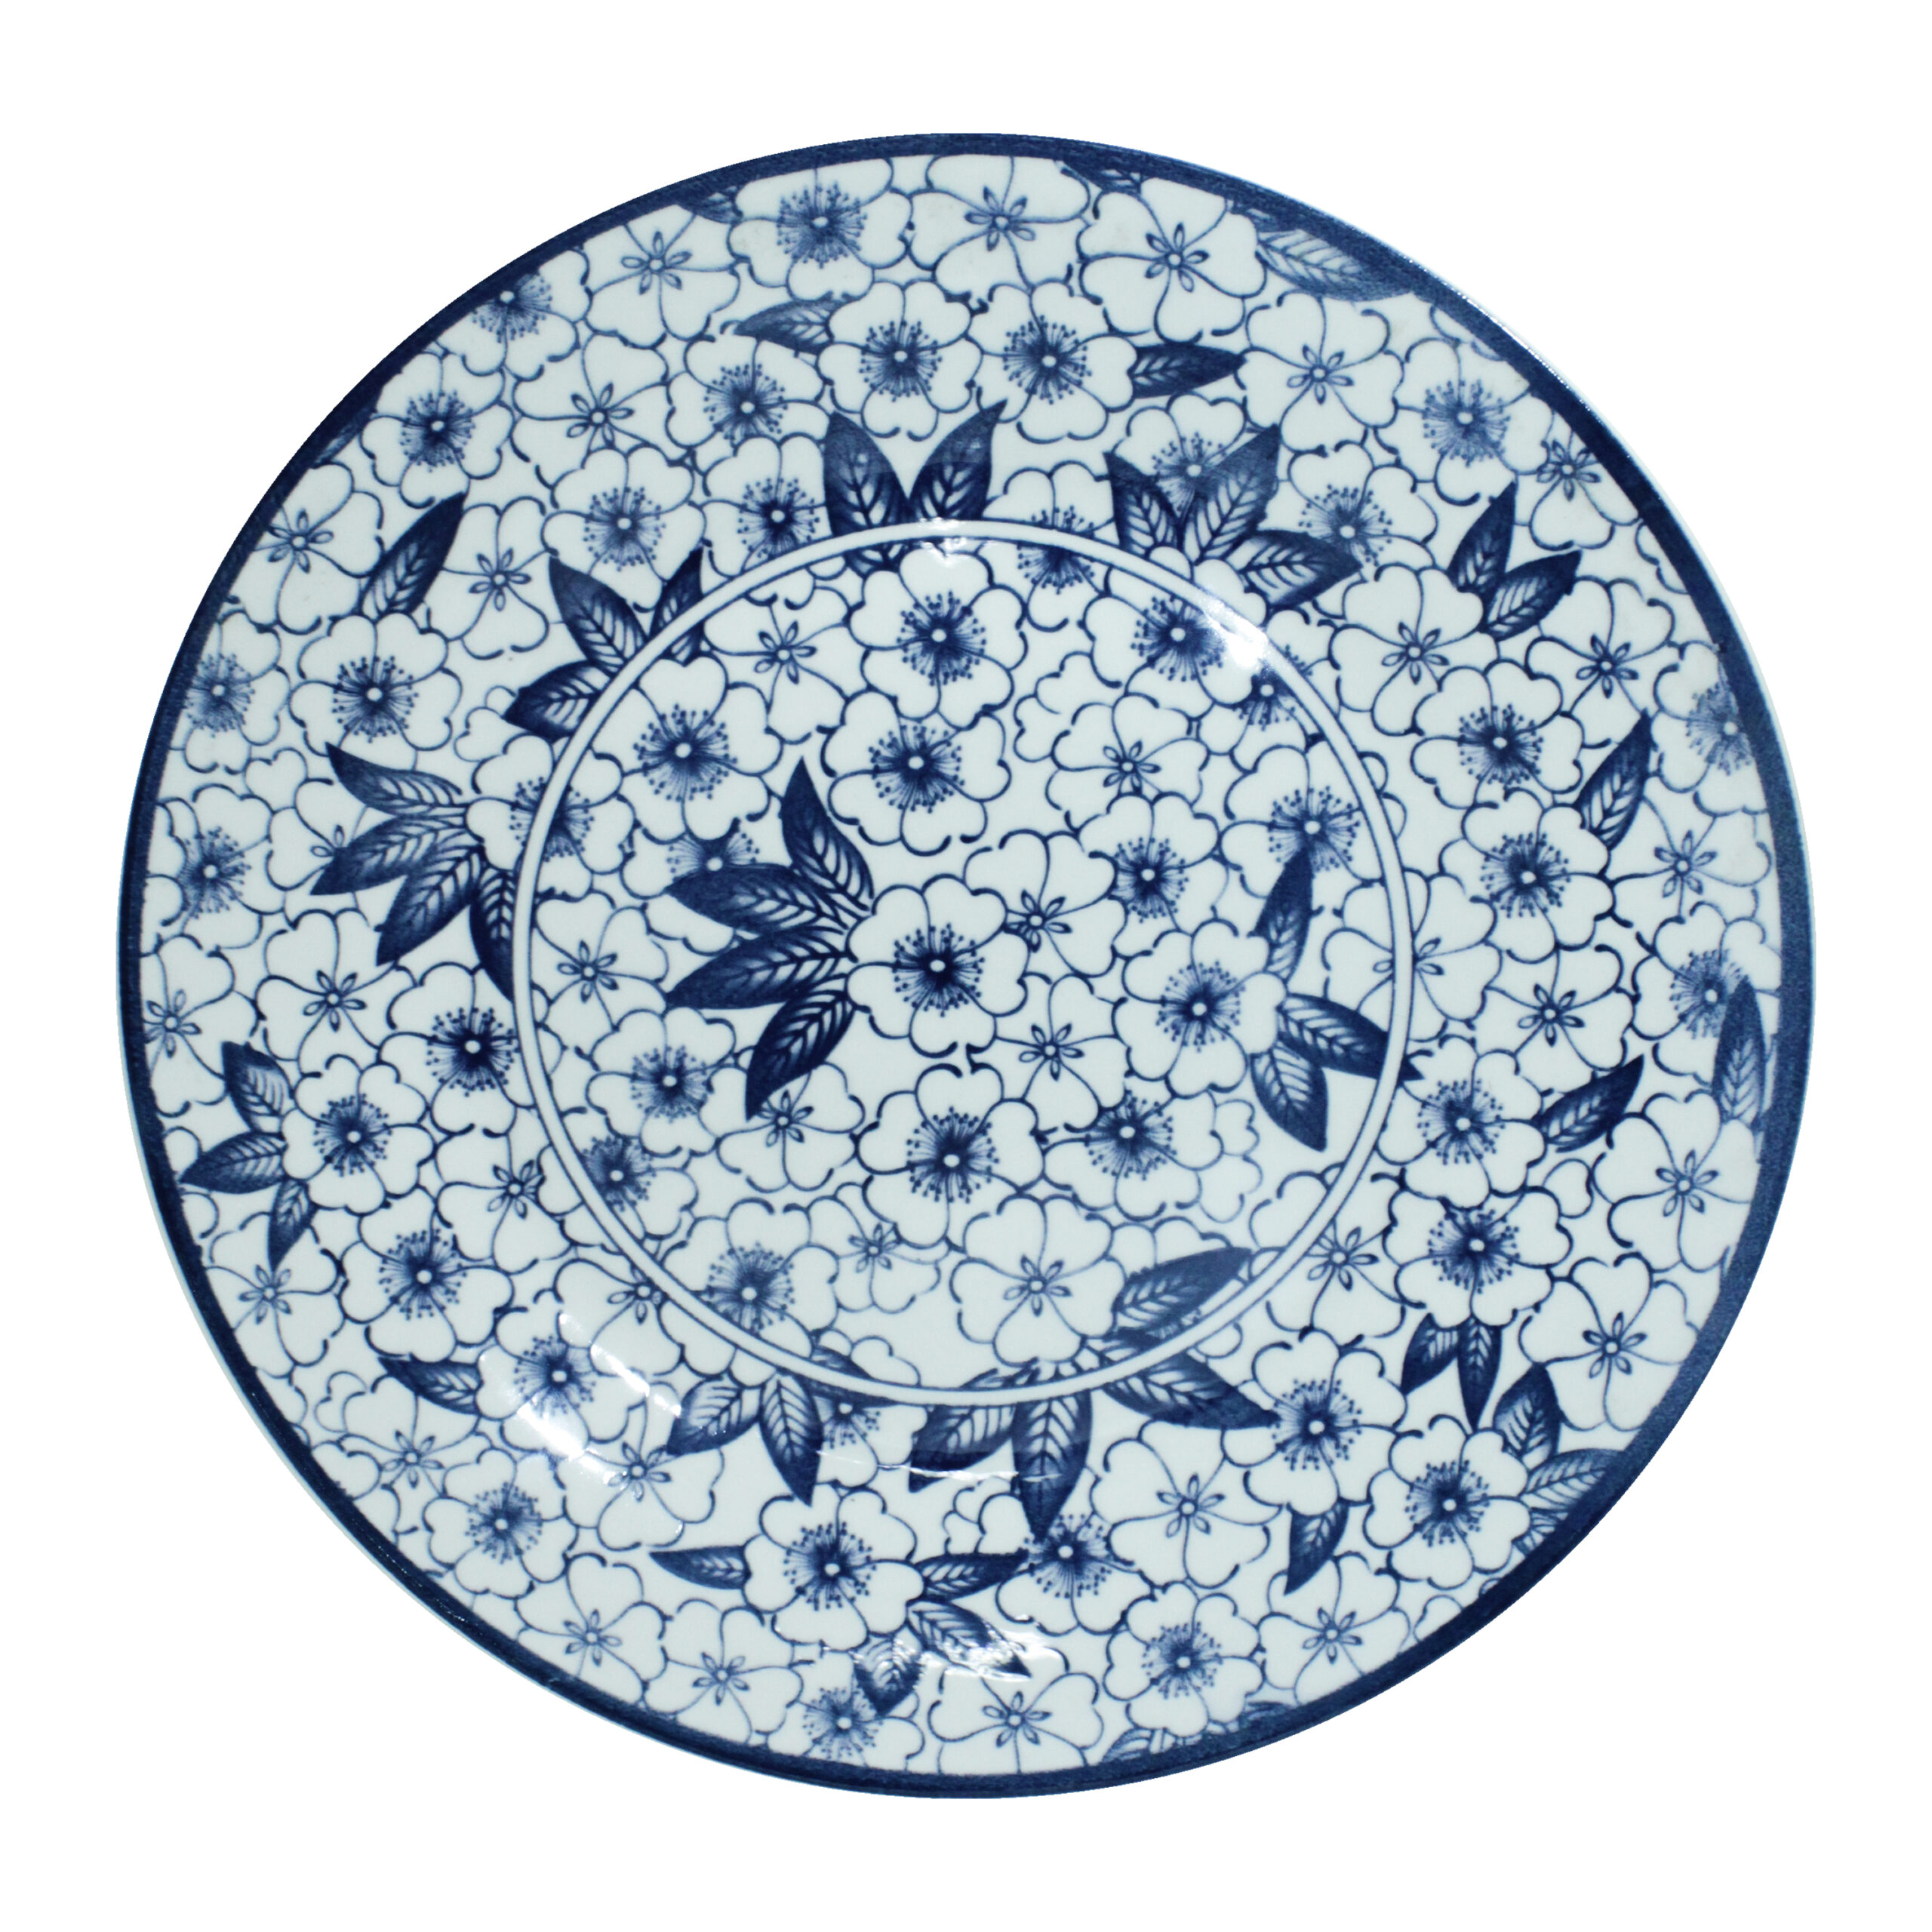 PORCELAIN DINNER PLATE ROUND 10.5" RETRO BLUE FLOWER DESIGN